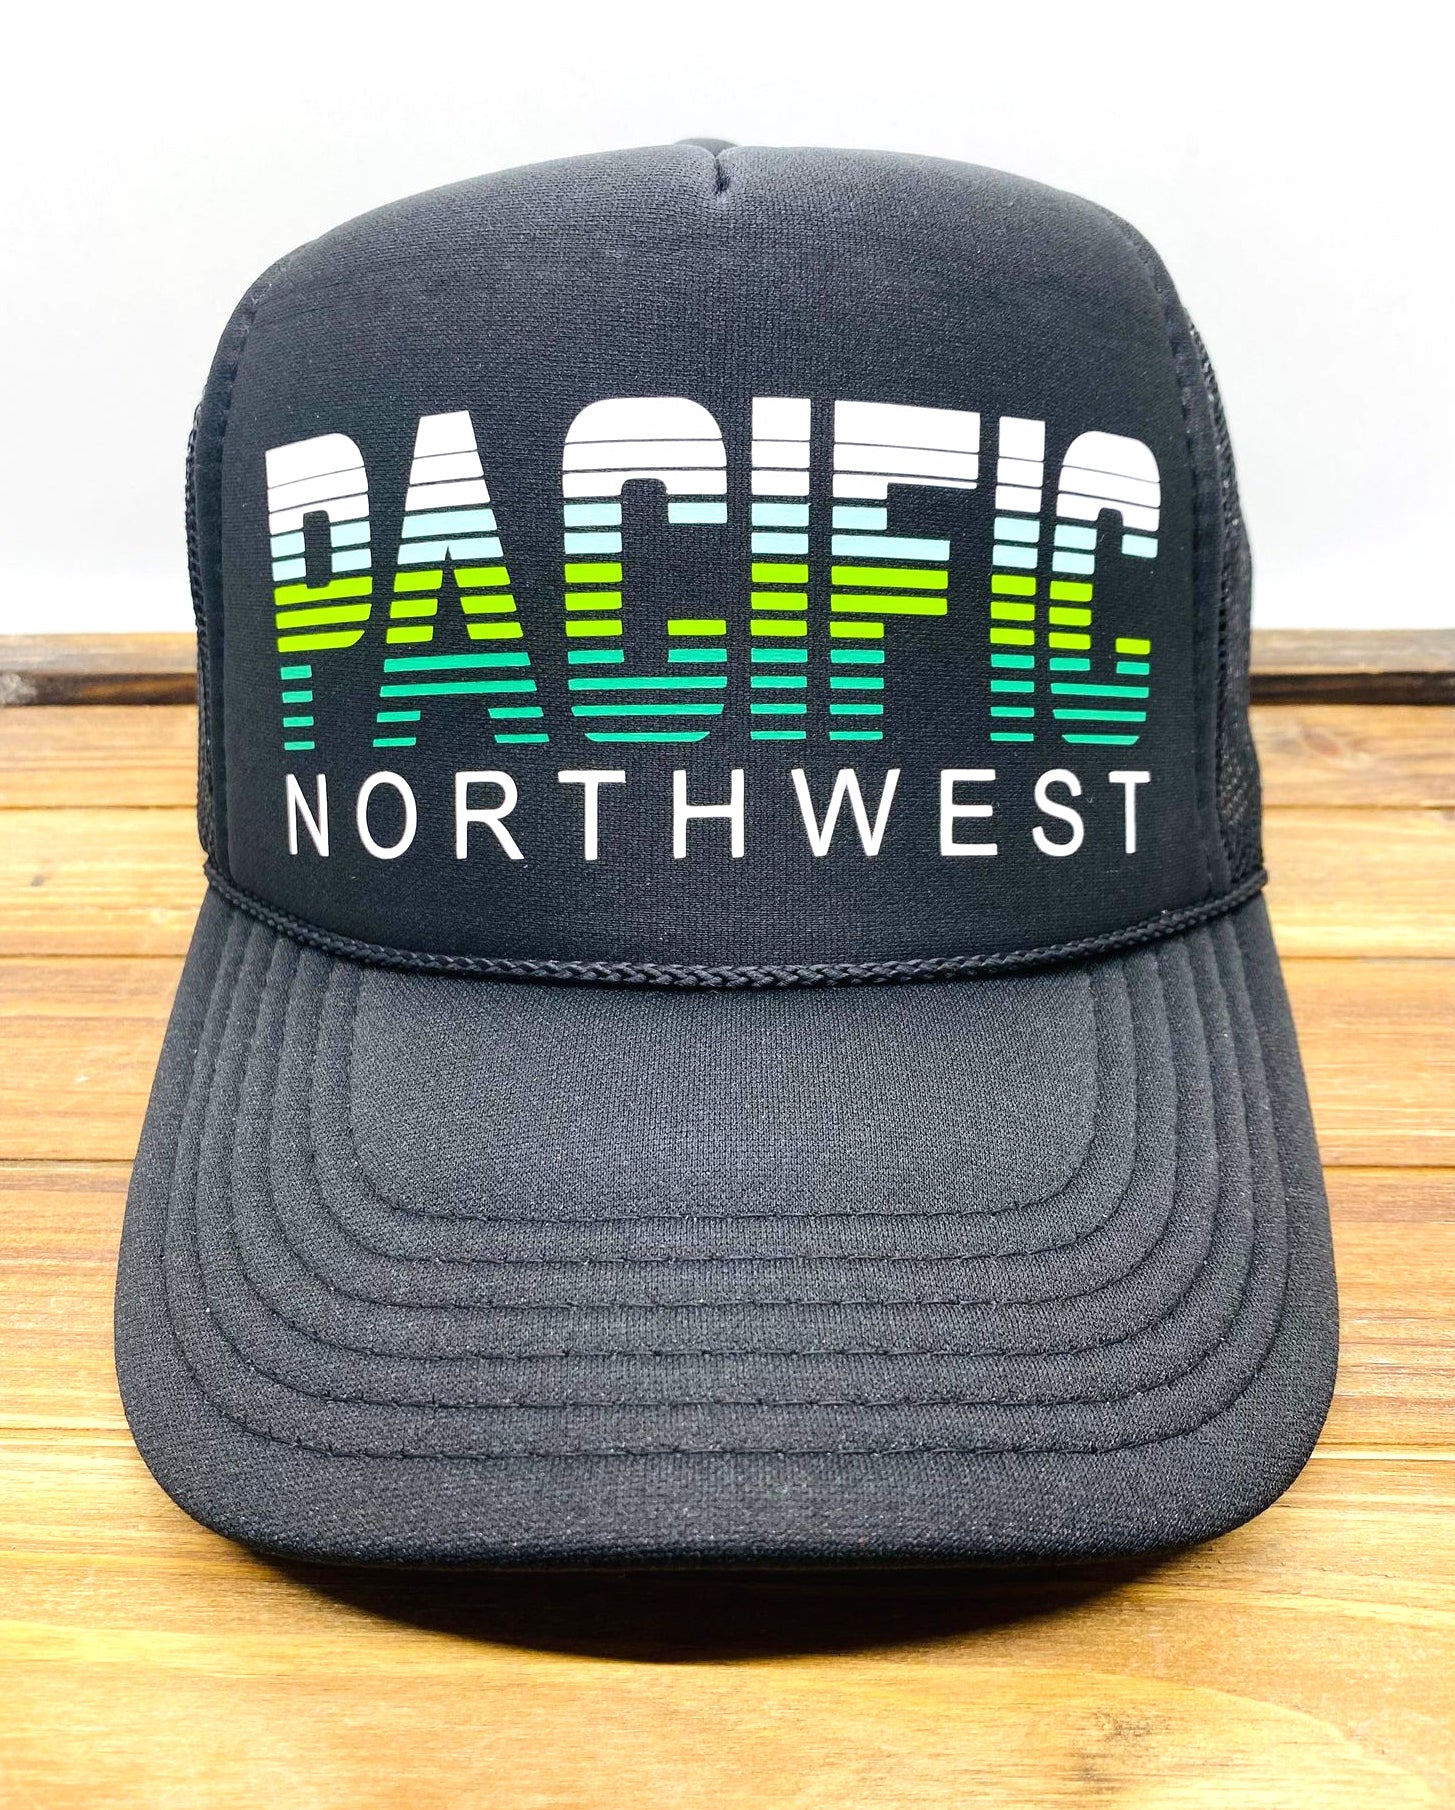 PACIFIC Northwest Trucker